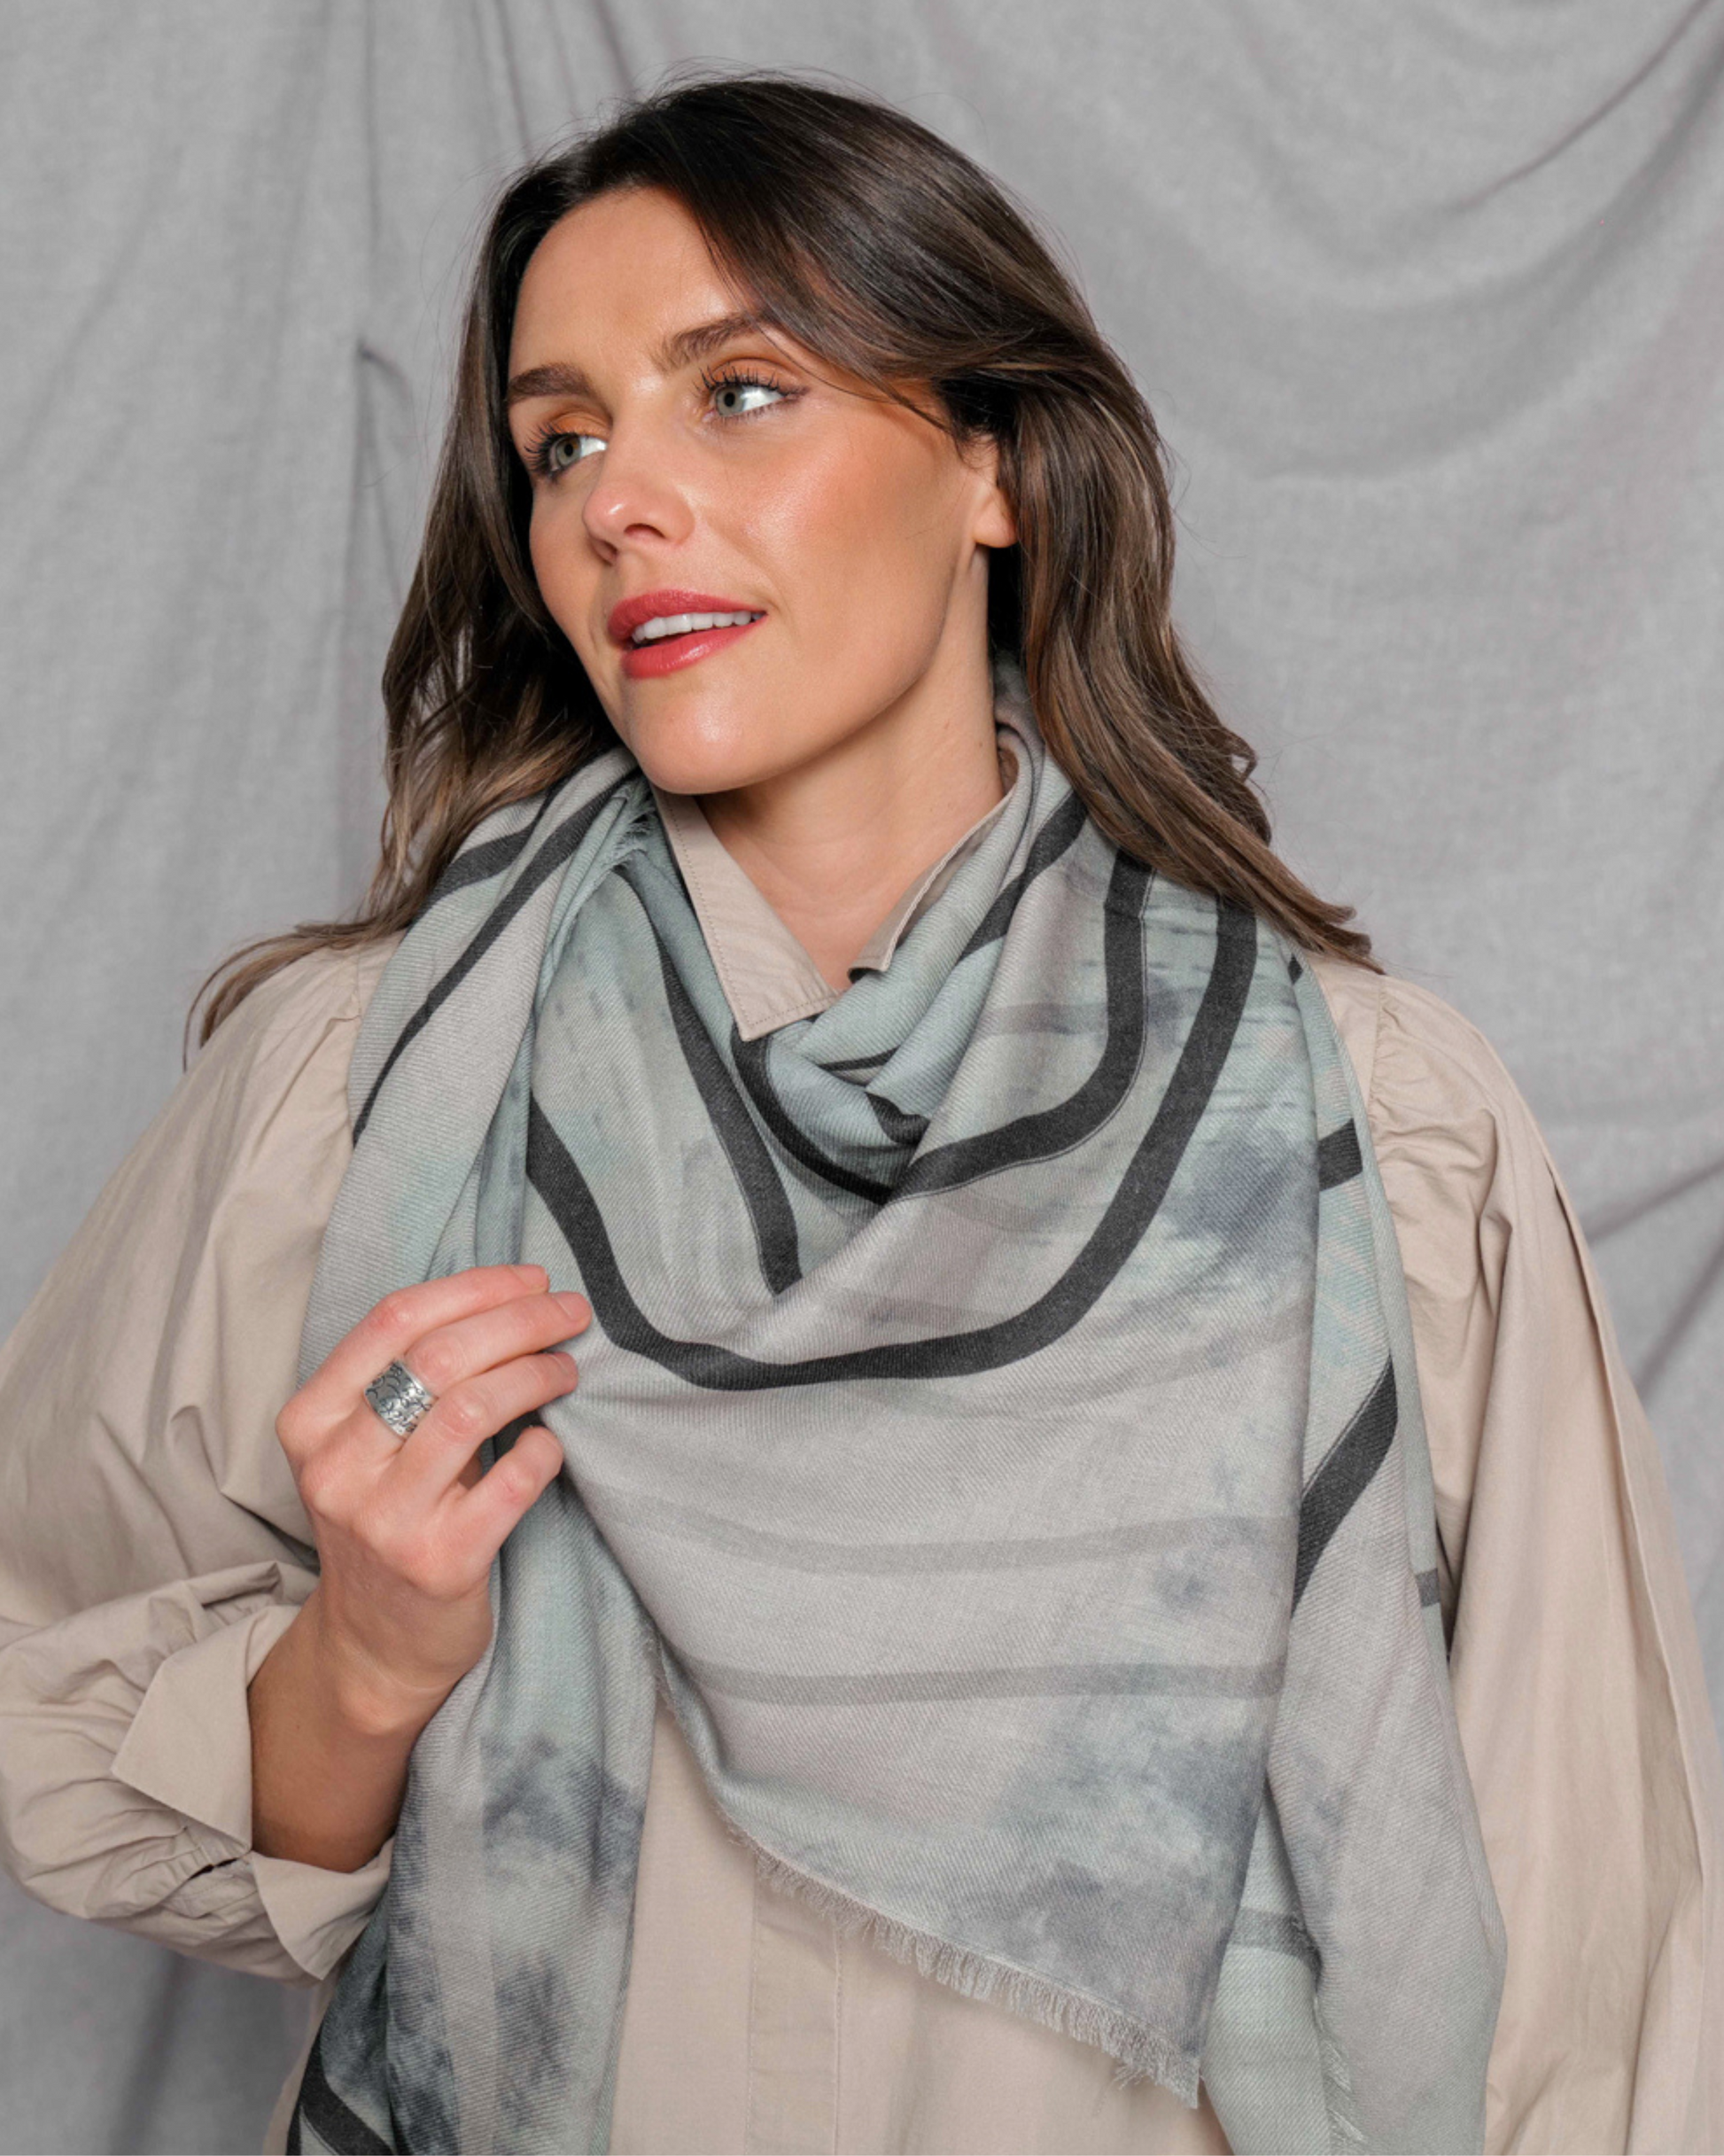 melbourne scarf brand original print designs